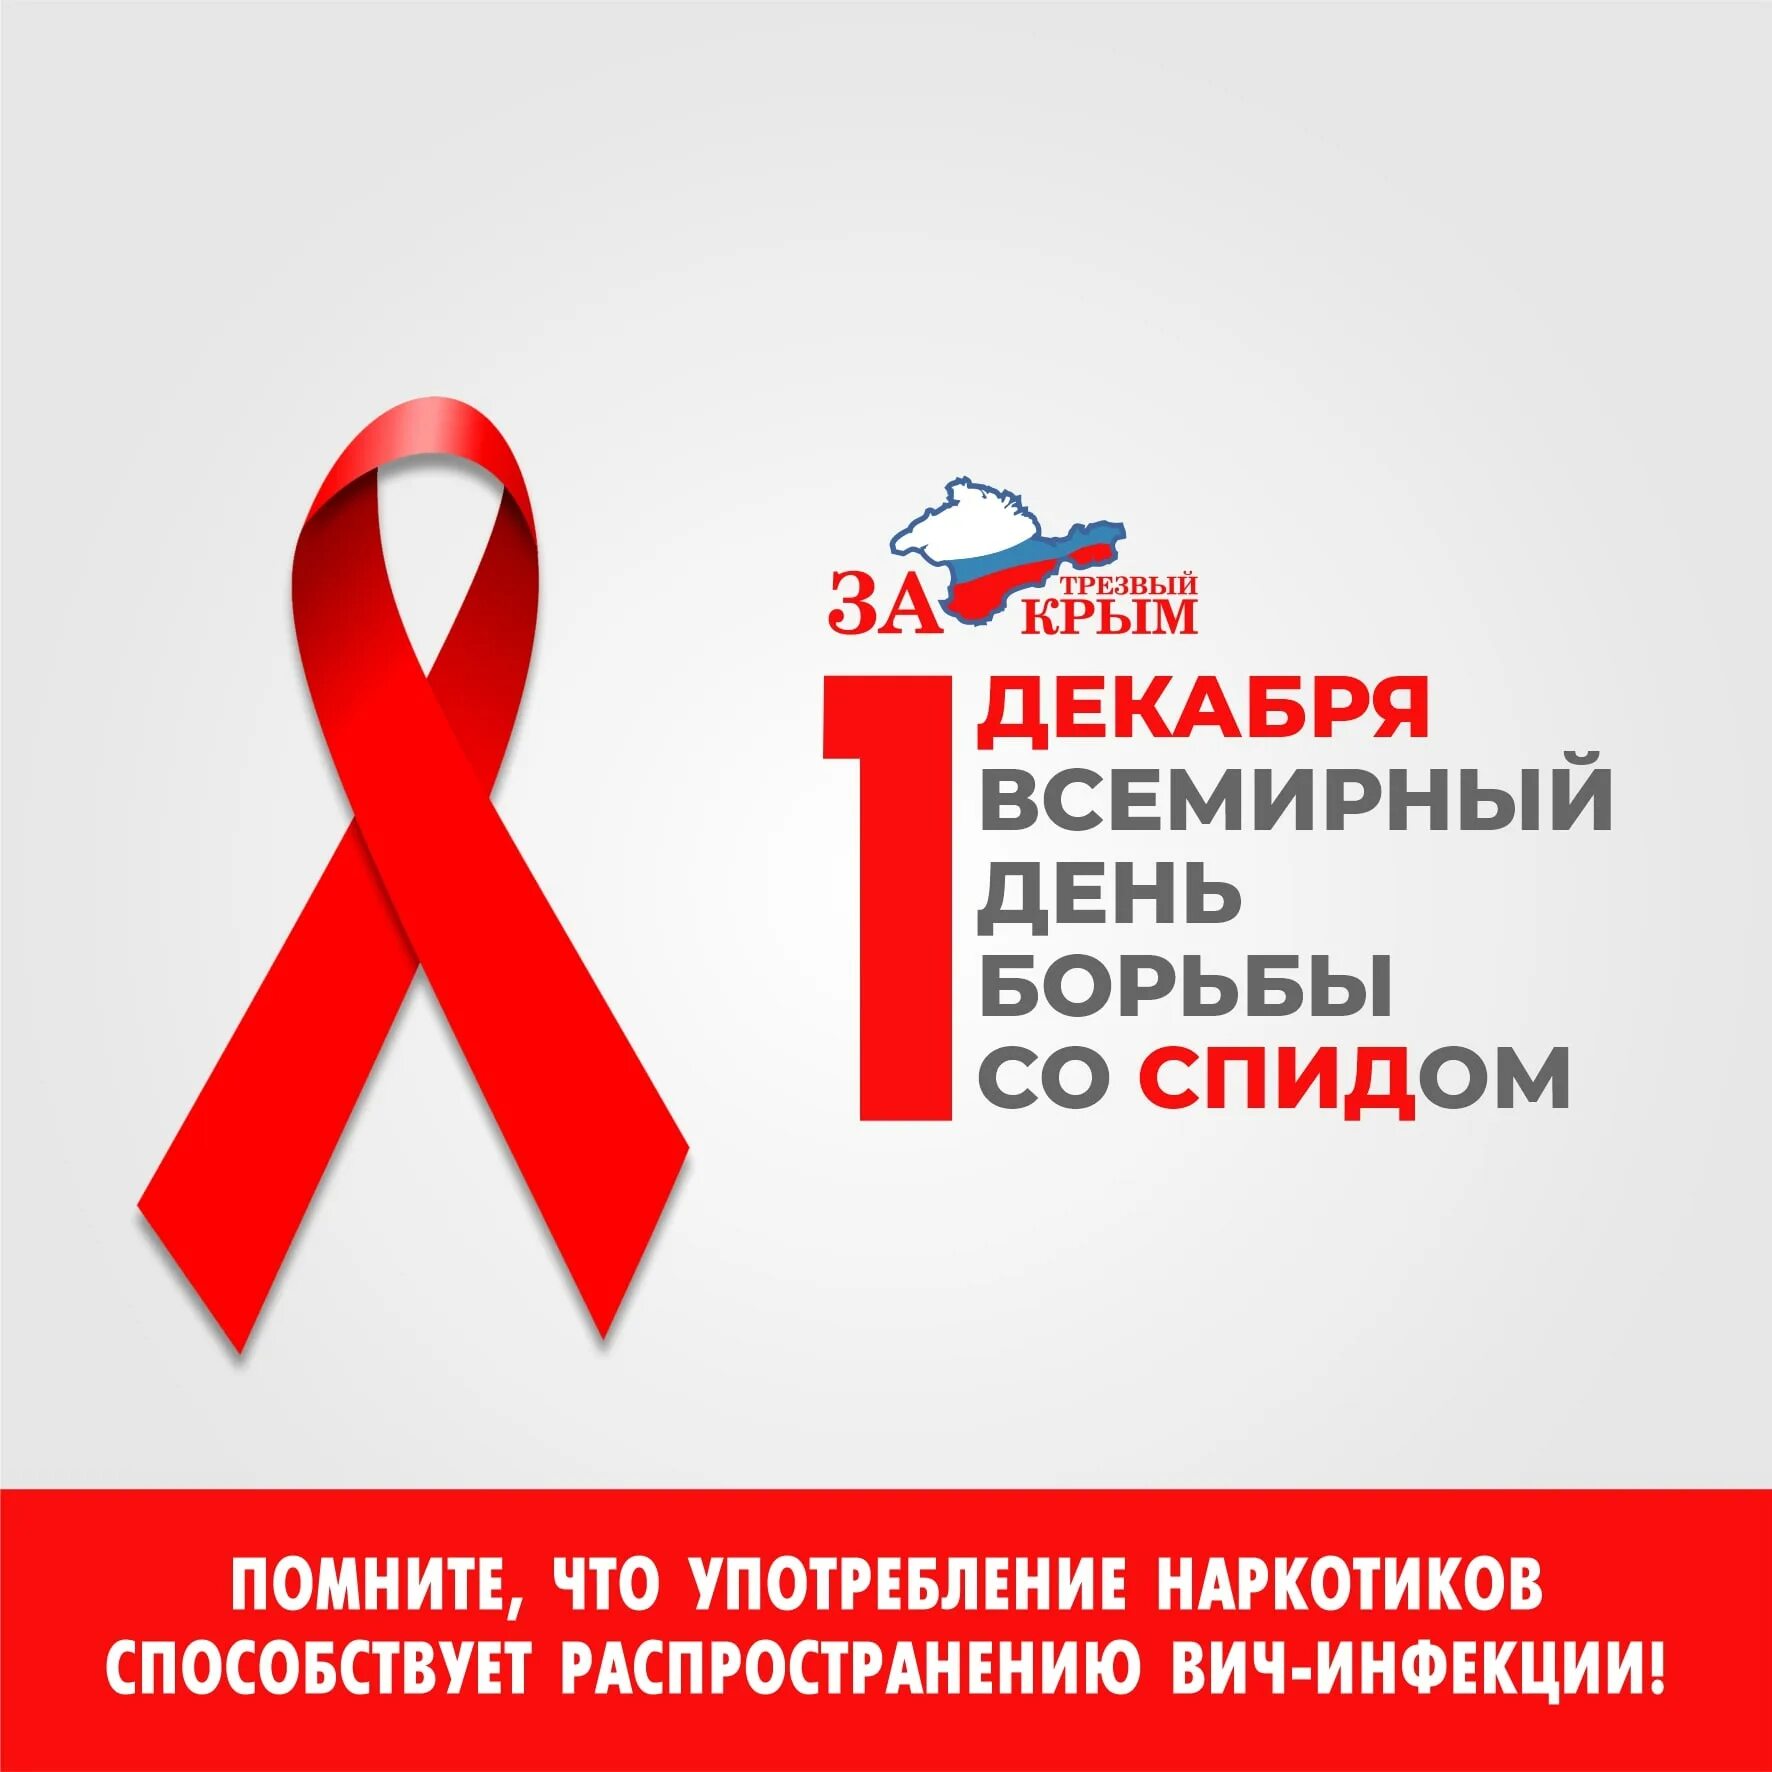 1 всемирный день борьбы со спидом. 1 Декабря Всемирный день борьбы со СПИДОМ.